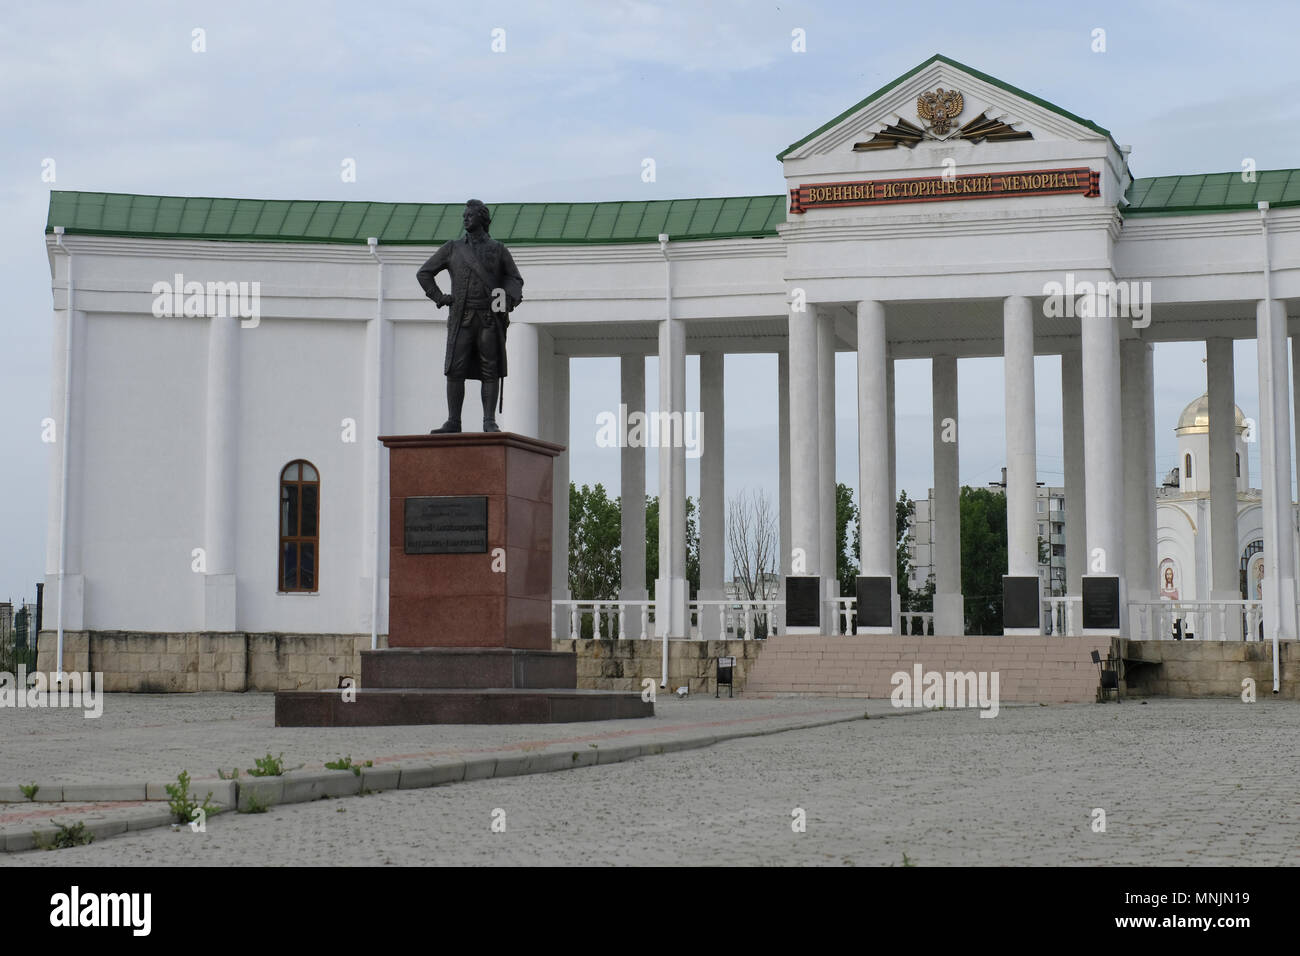 Militärische Gedenkstätte und Friedhof in der Stadt Bender de-facto-offizieller Name Bendery innerhalb der international anerkannten Grenzen der Republik Moldau unter der De-facto-Kontrolle der unerkannte Pridnestrovian Moldauischen Republik auch als Transnistrien (PMR) seit 1992. Stockfoto